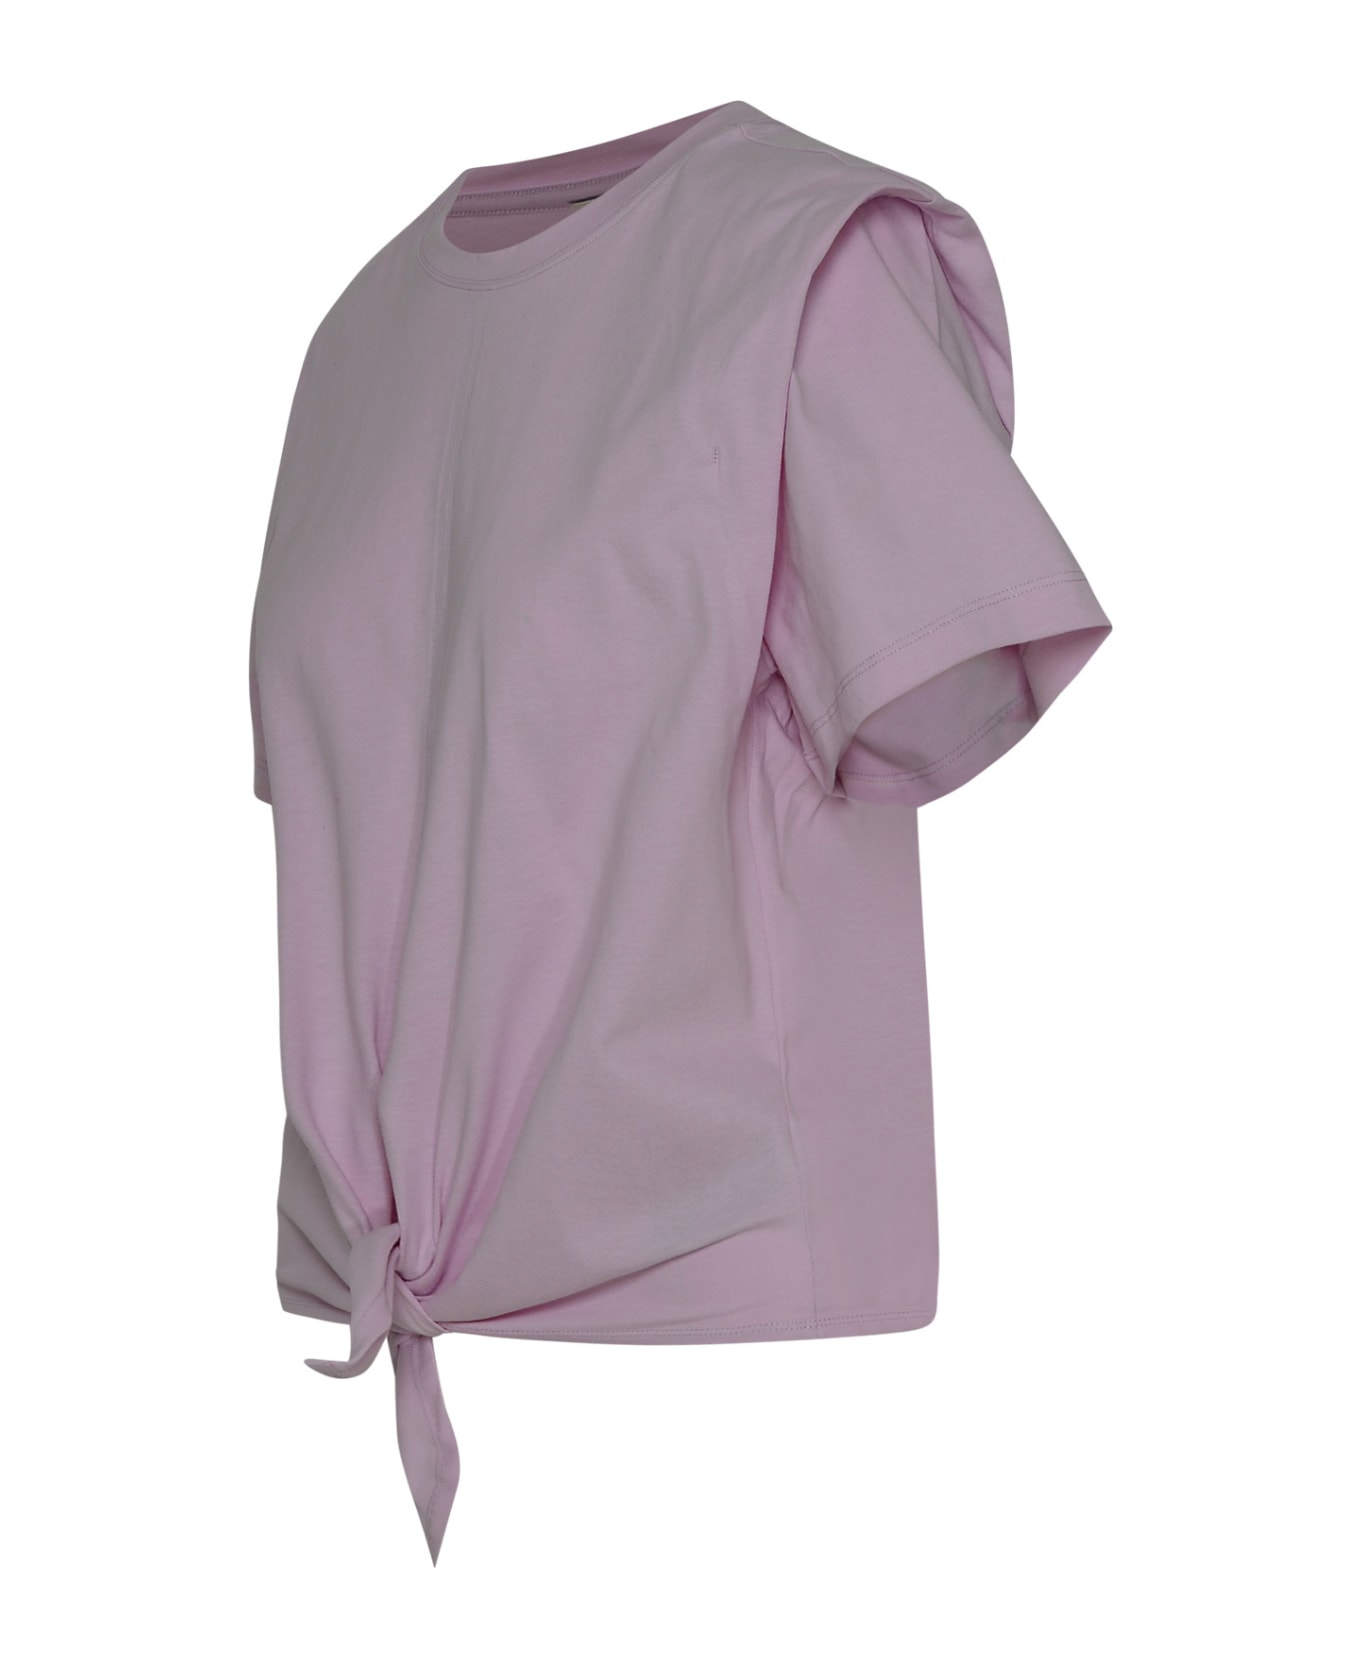 Isabel Marant Zelikia T-shirt - Light pink